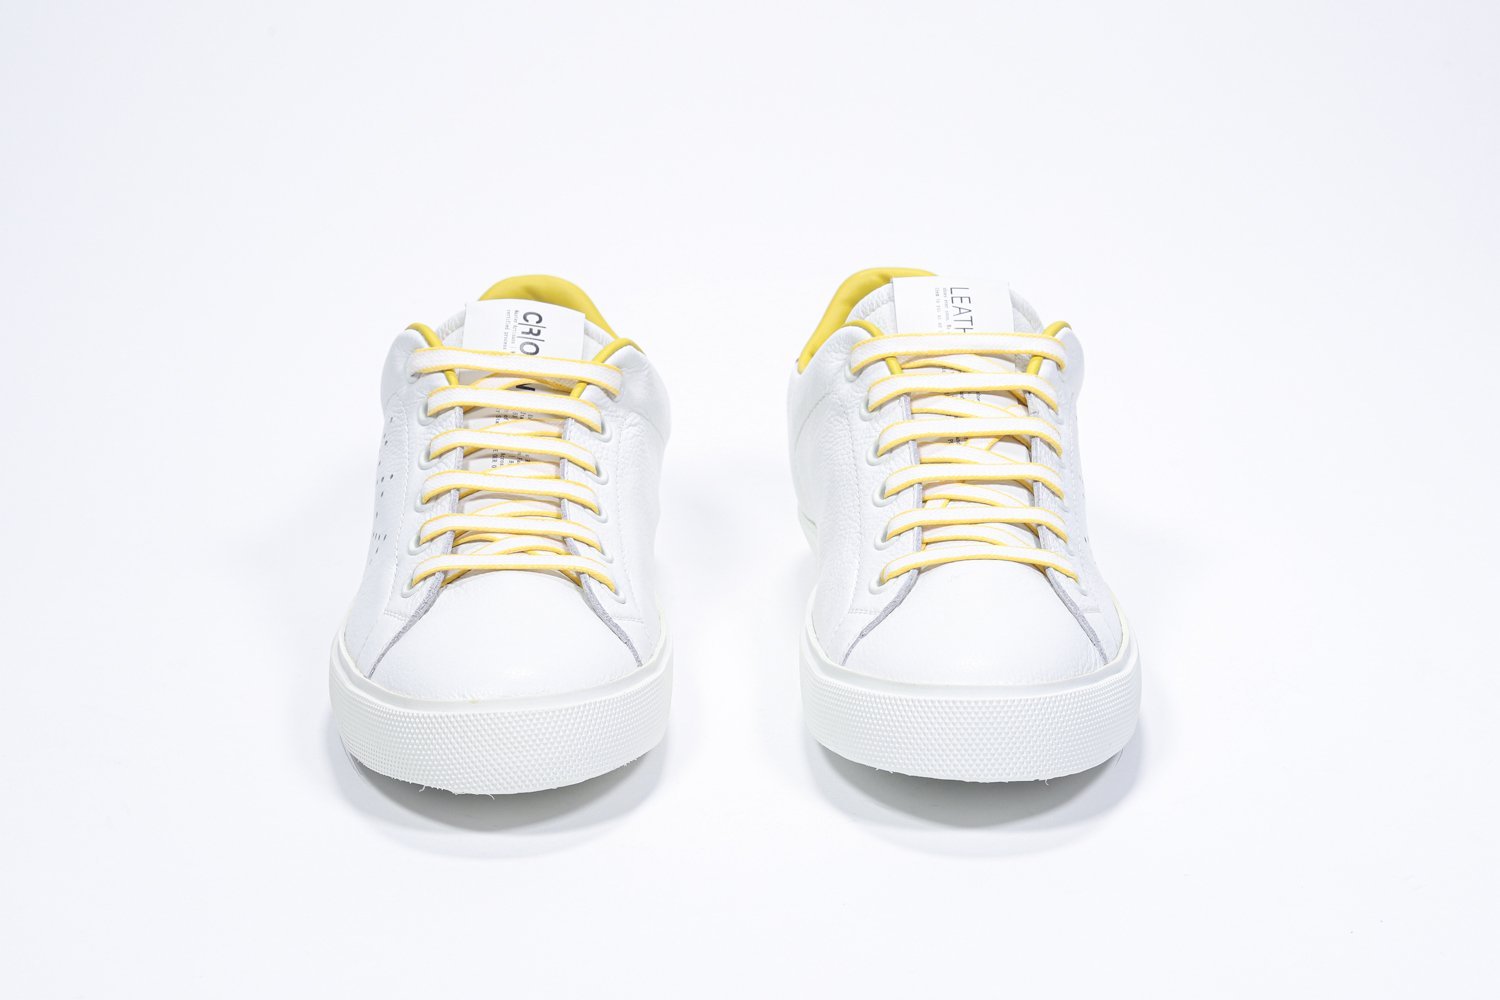 Vista frontale di BASSE  sneaker  bianco con dettagli gialli e logo della corona traforato sulla tomaia. Tomaia in pelle e suola in gomma bianca.